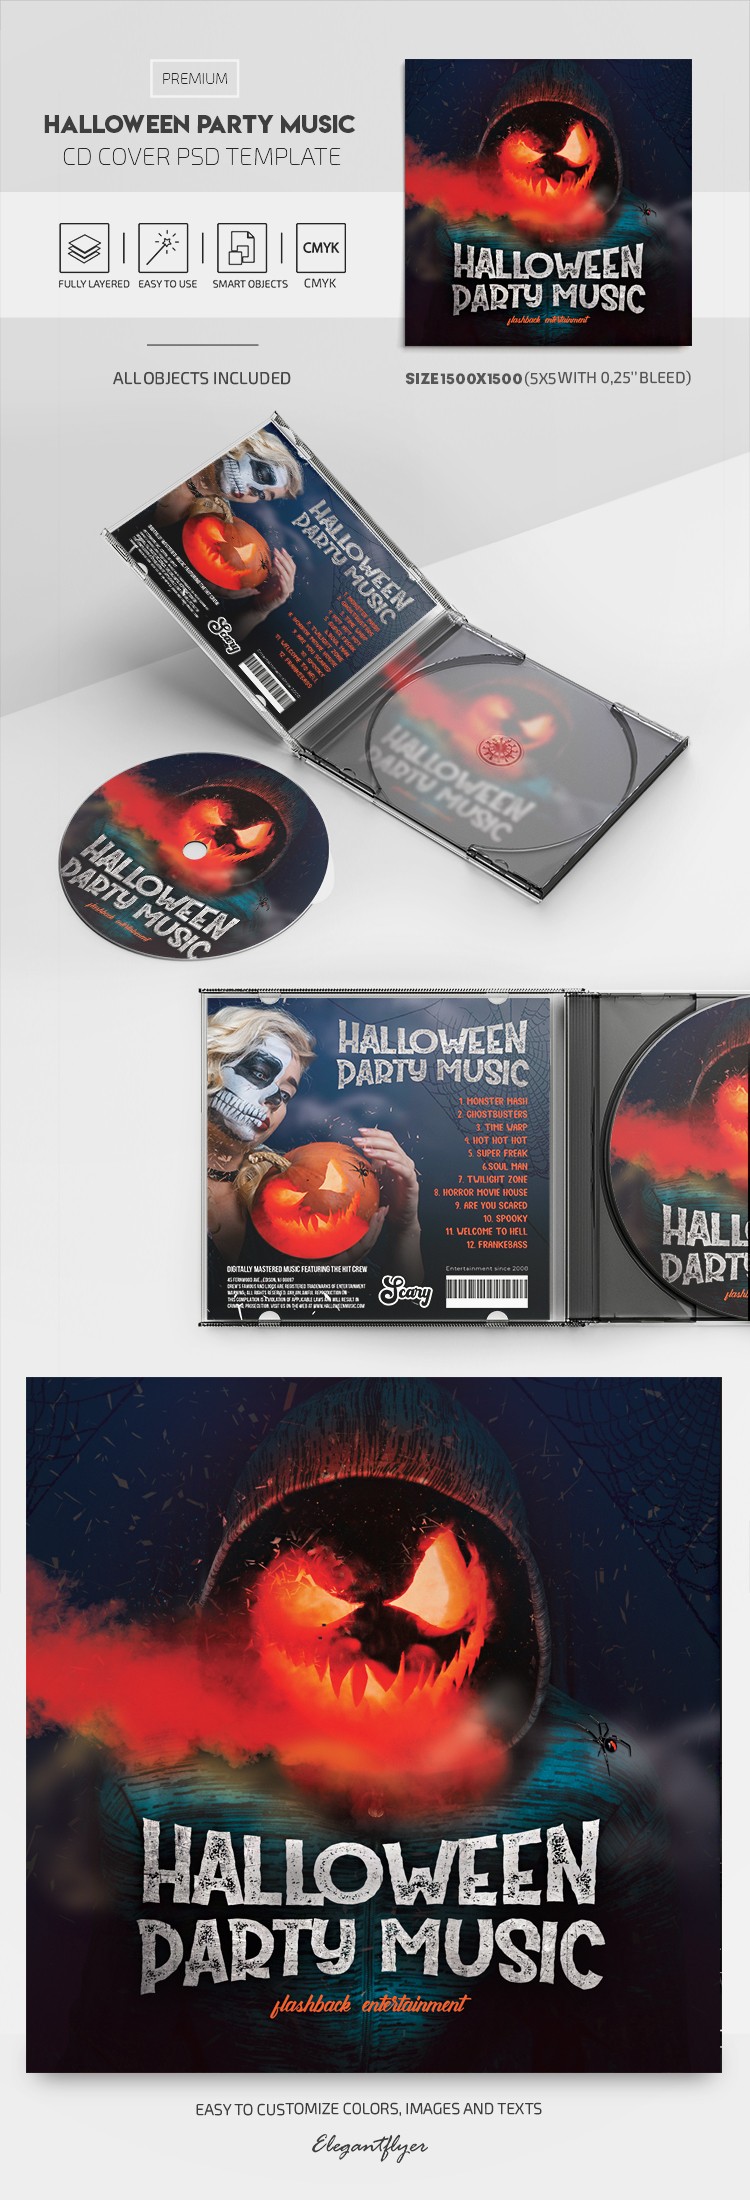 Okładka CD z muzyką na halloweenową imprezę. by ElegantFlyer